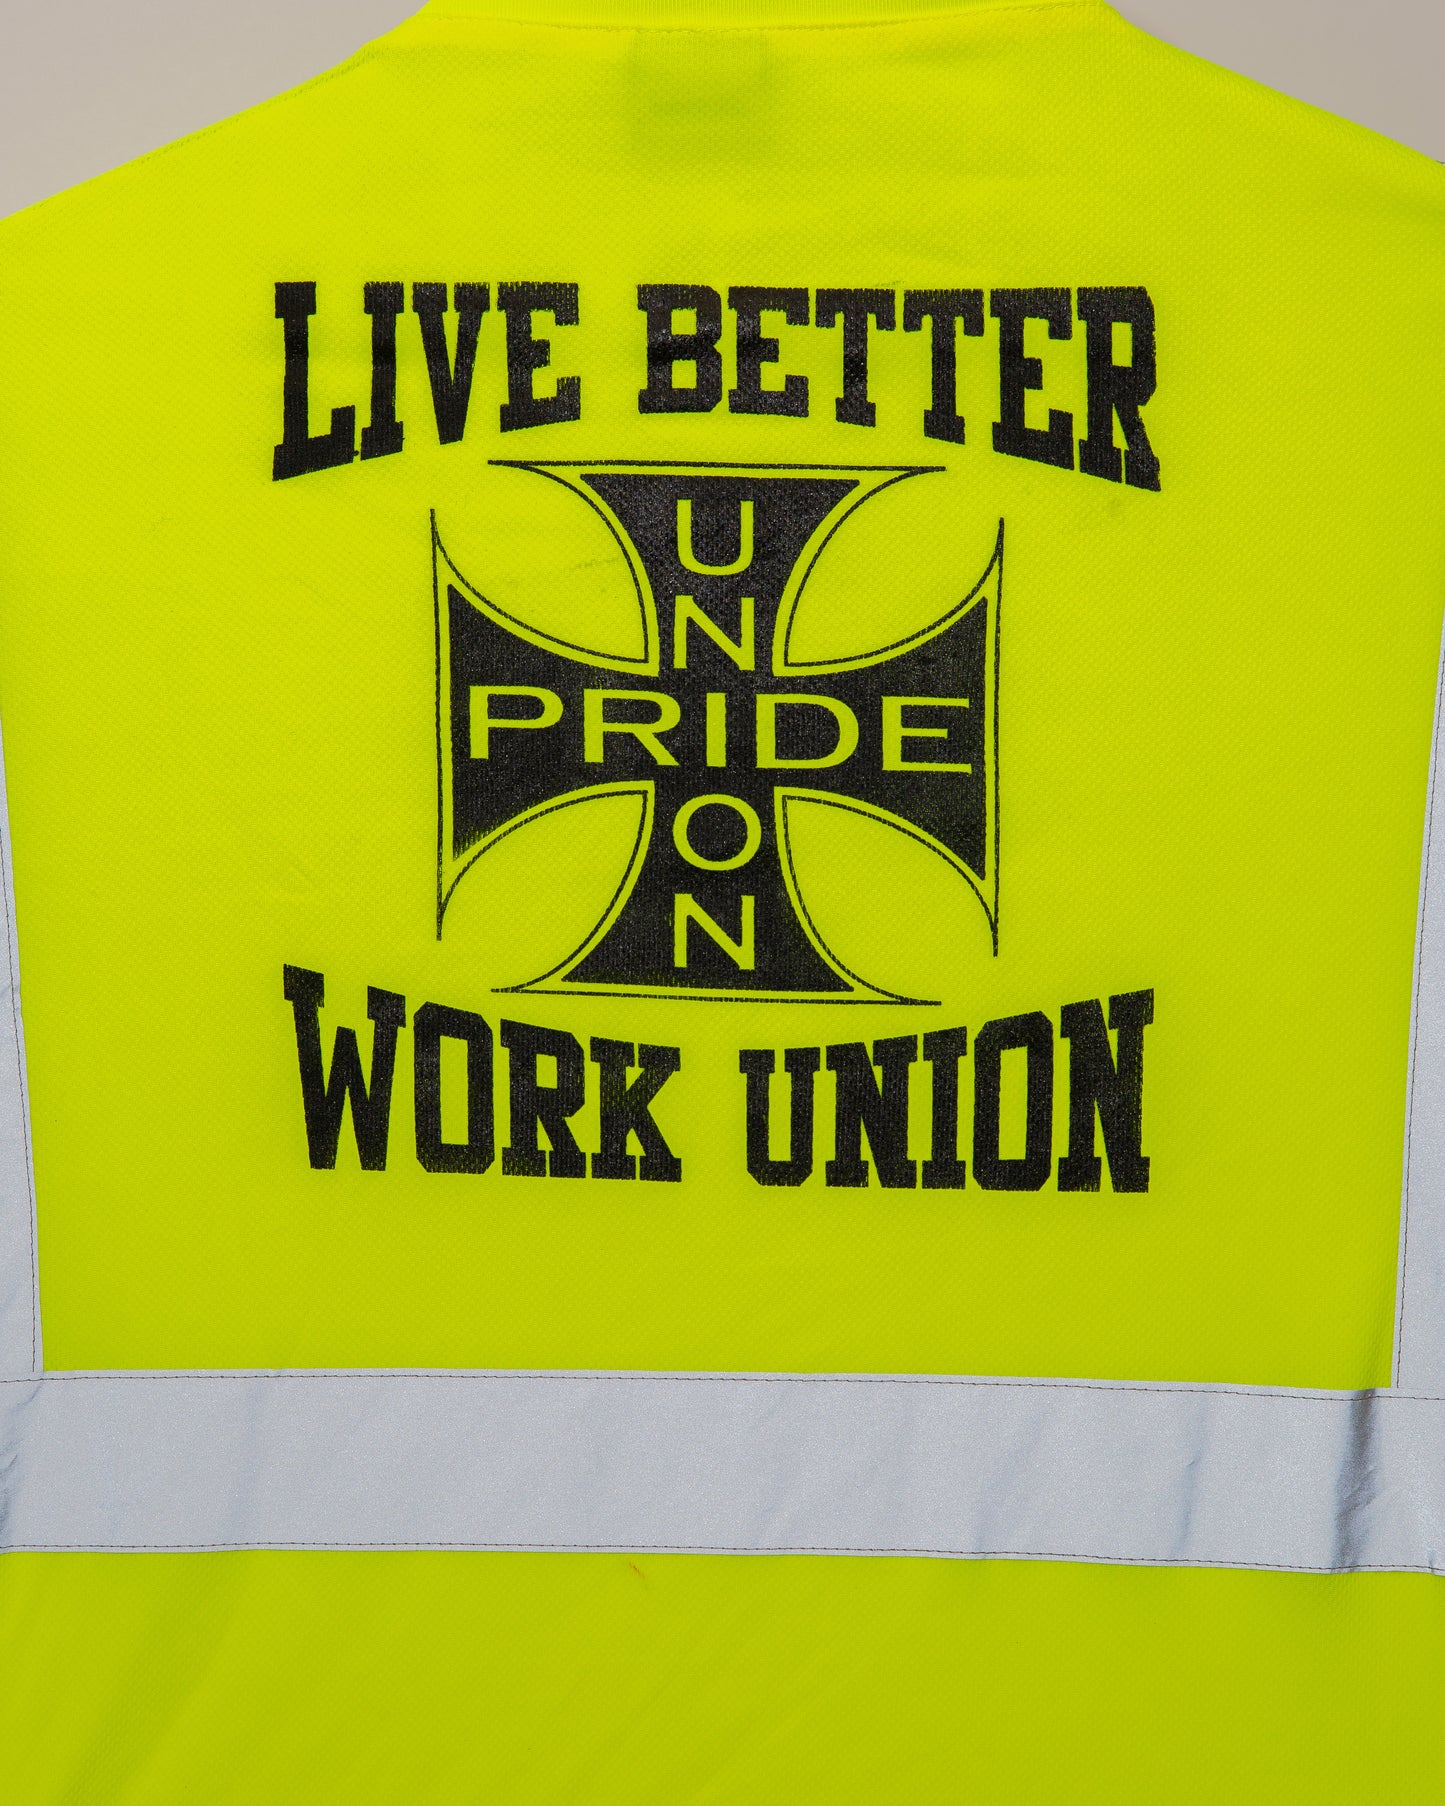 Live Better Union Pride